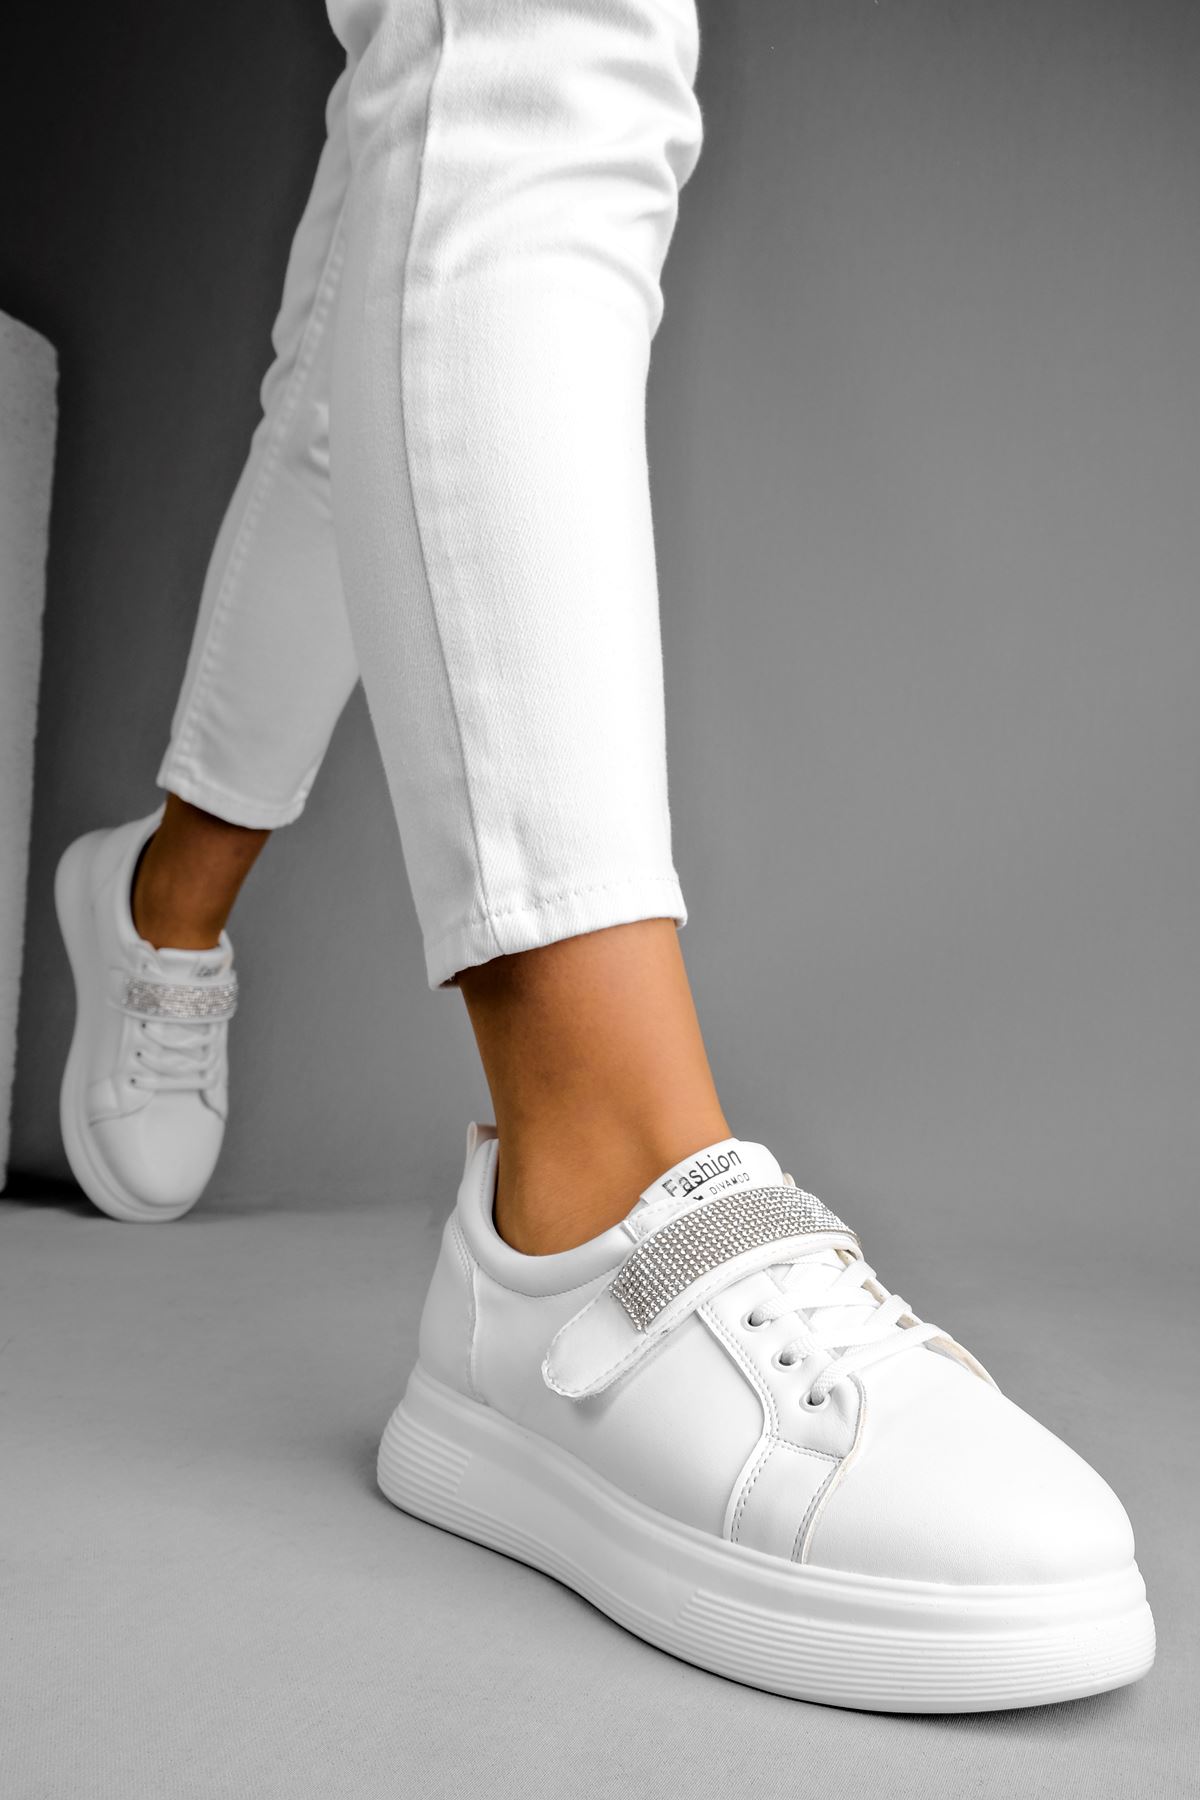 Mila Kadın Spor Ayakkabı Bant Taşlı-beyaz